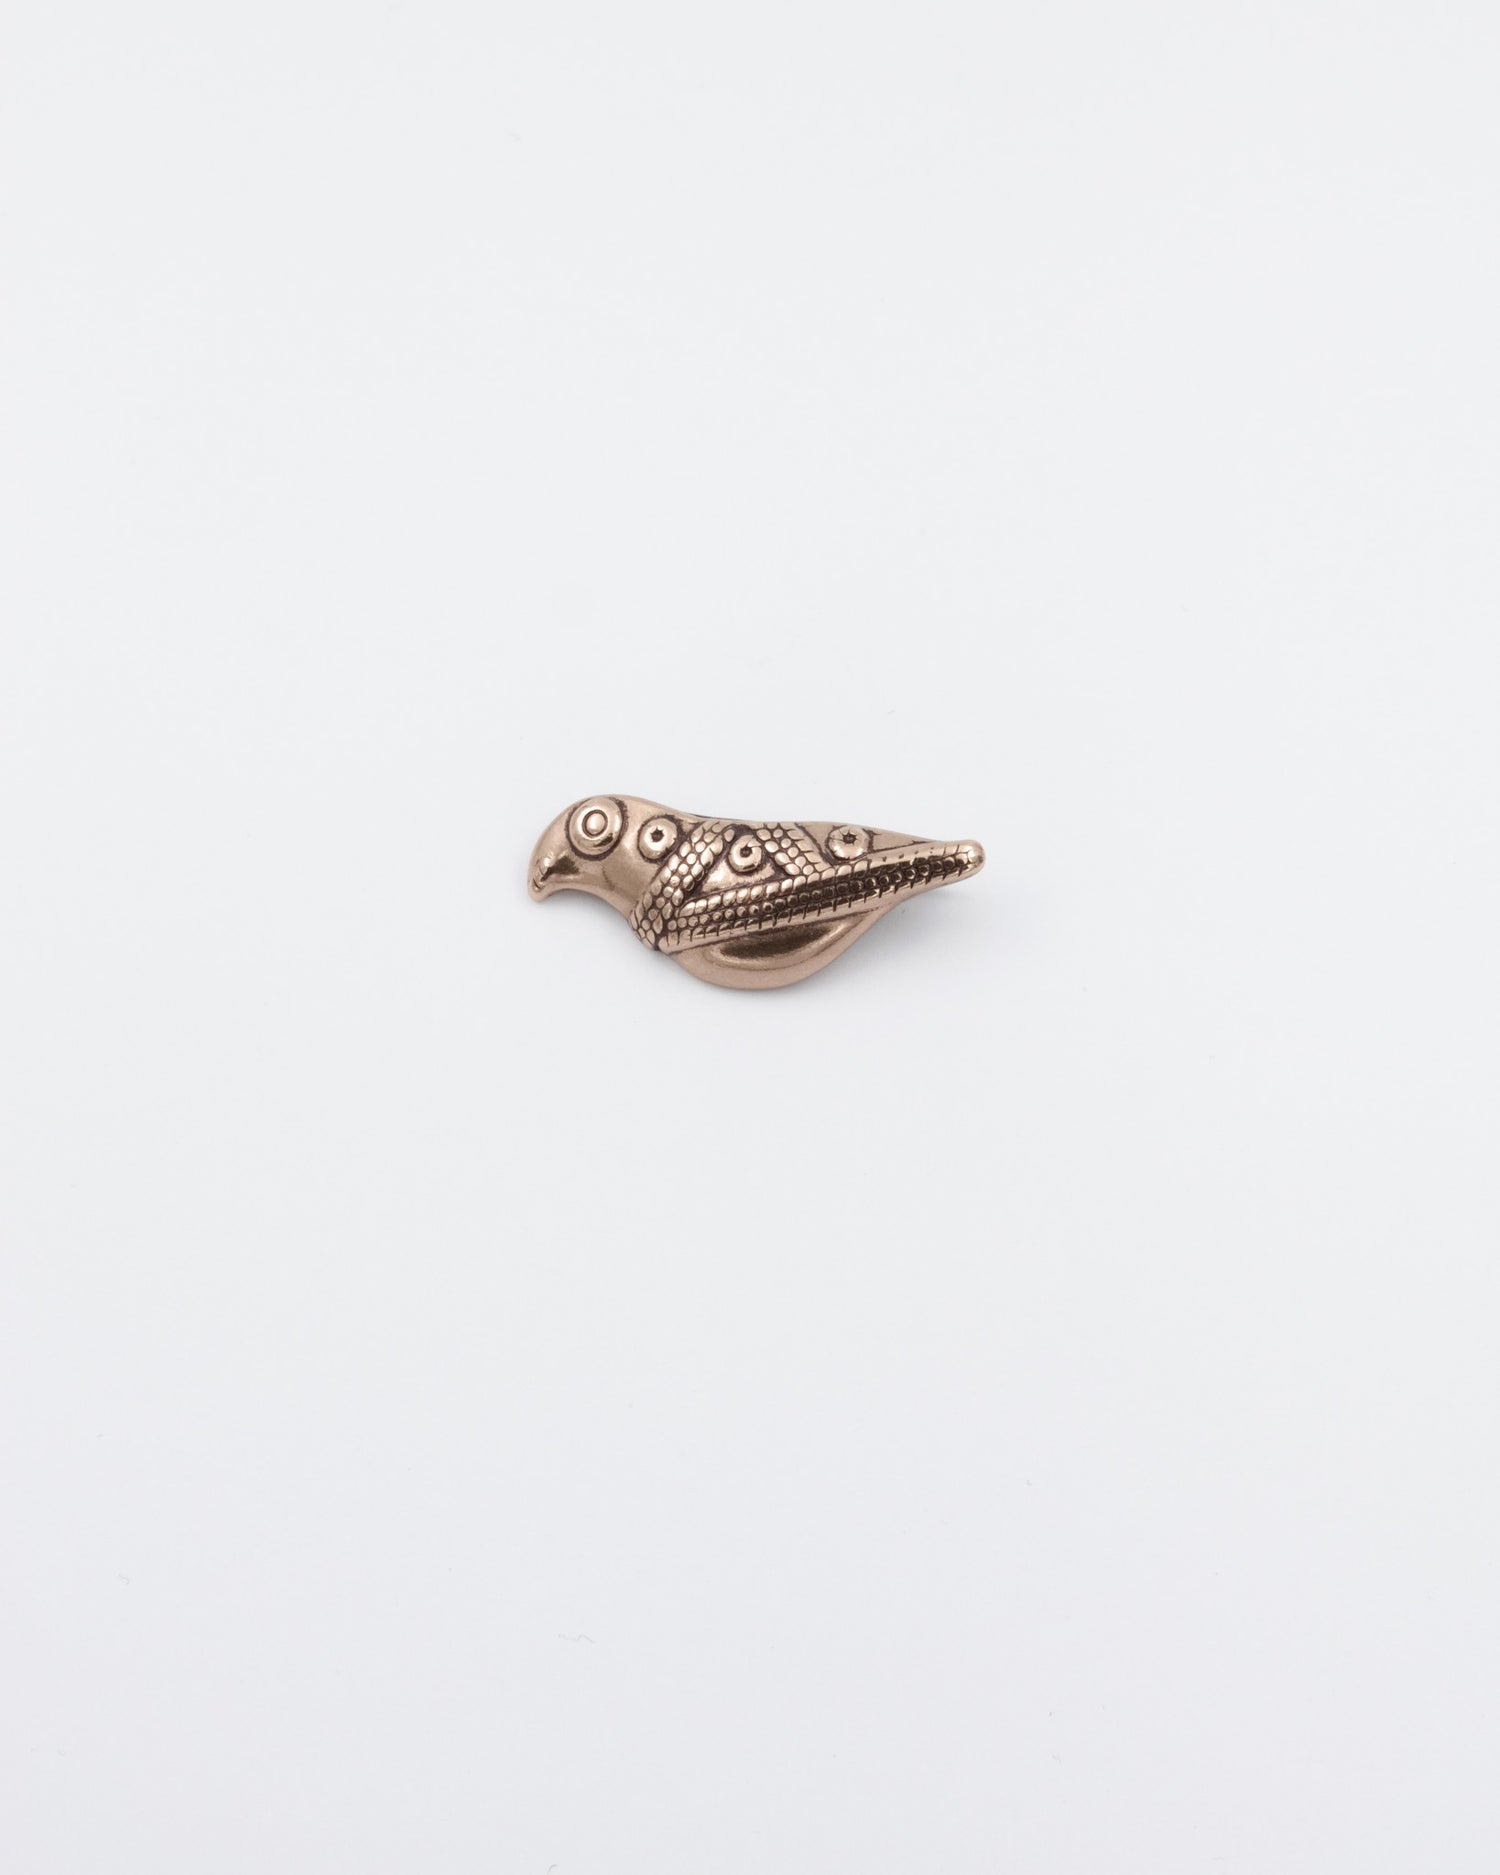 Kept Hattula's bird brooch bronze